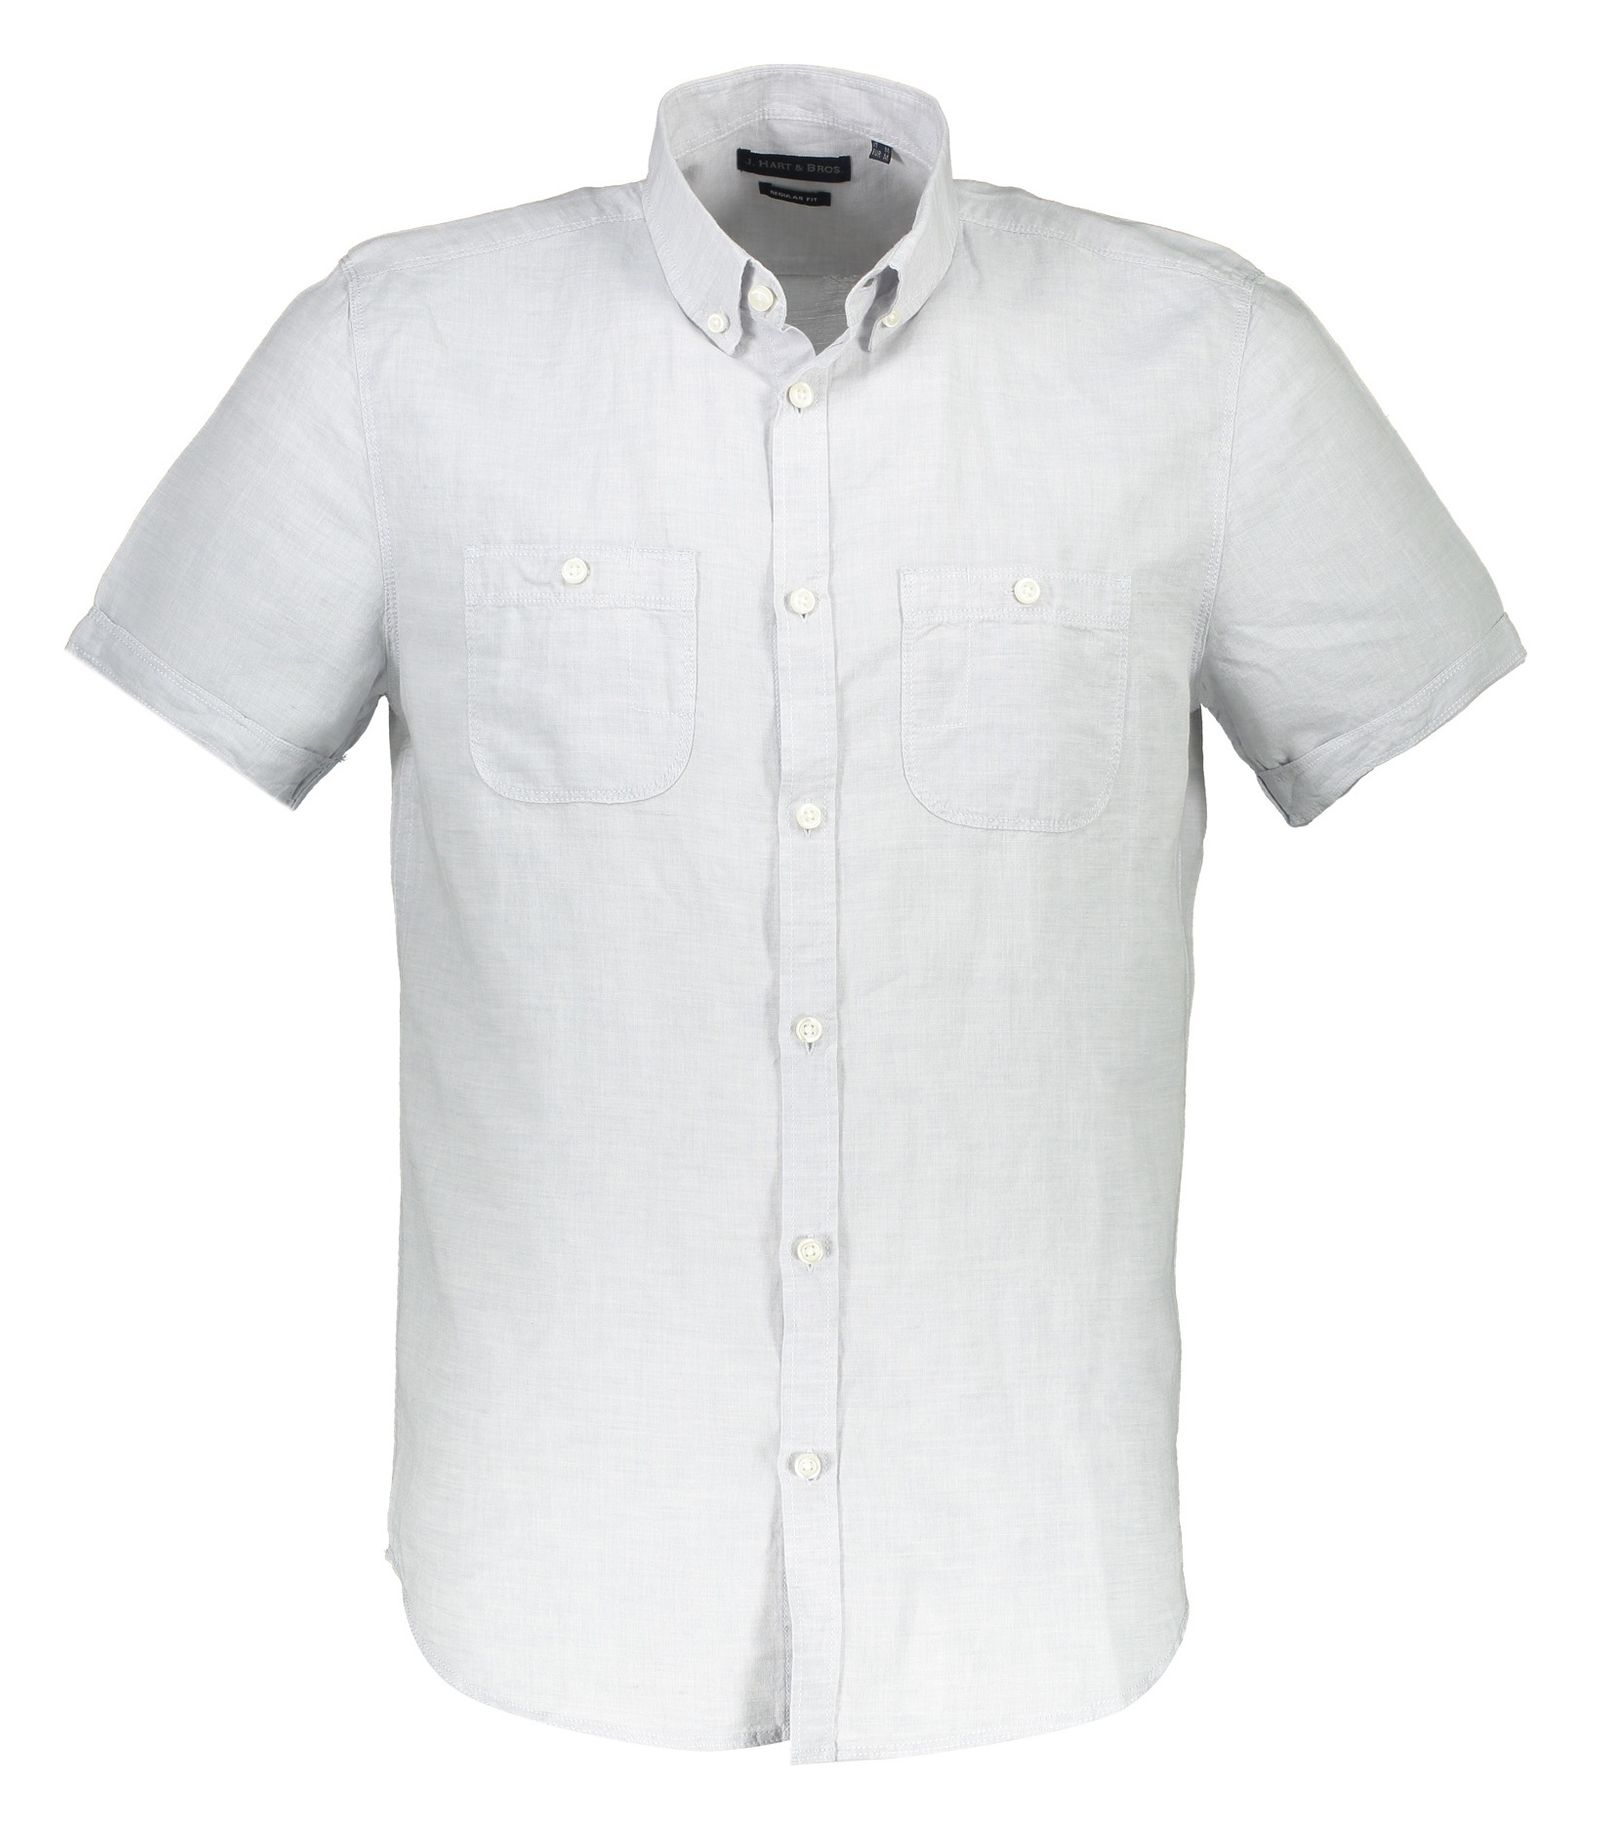 پیراهن آستین کوتاه مردانه - یوپیم - طوسي روشن - 2